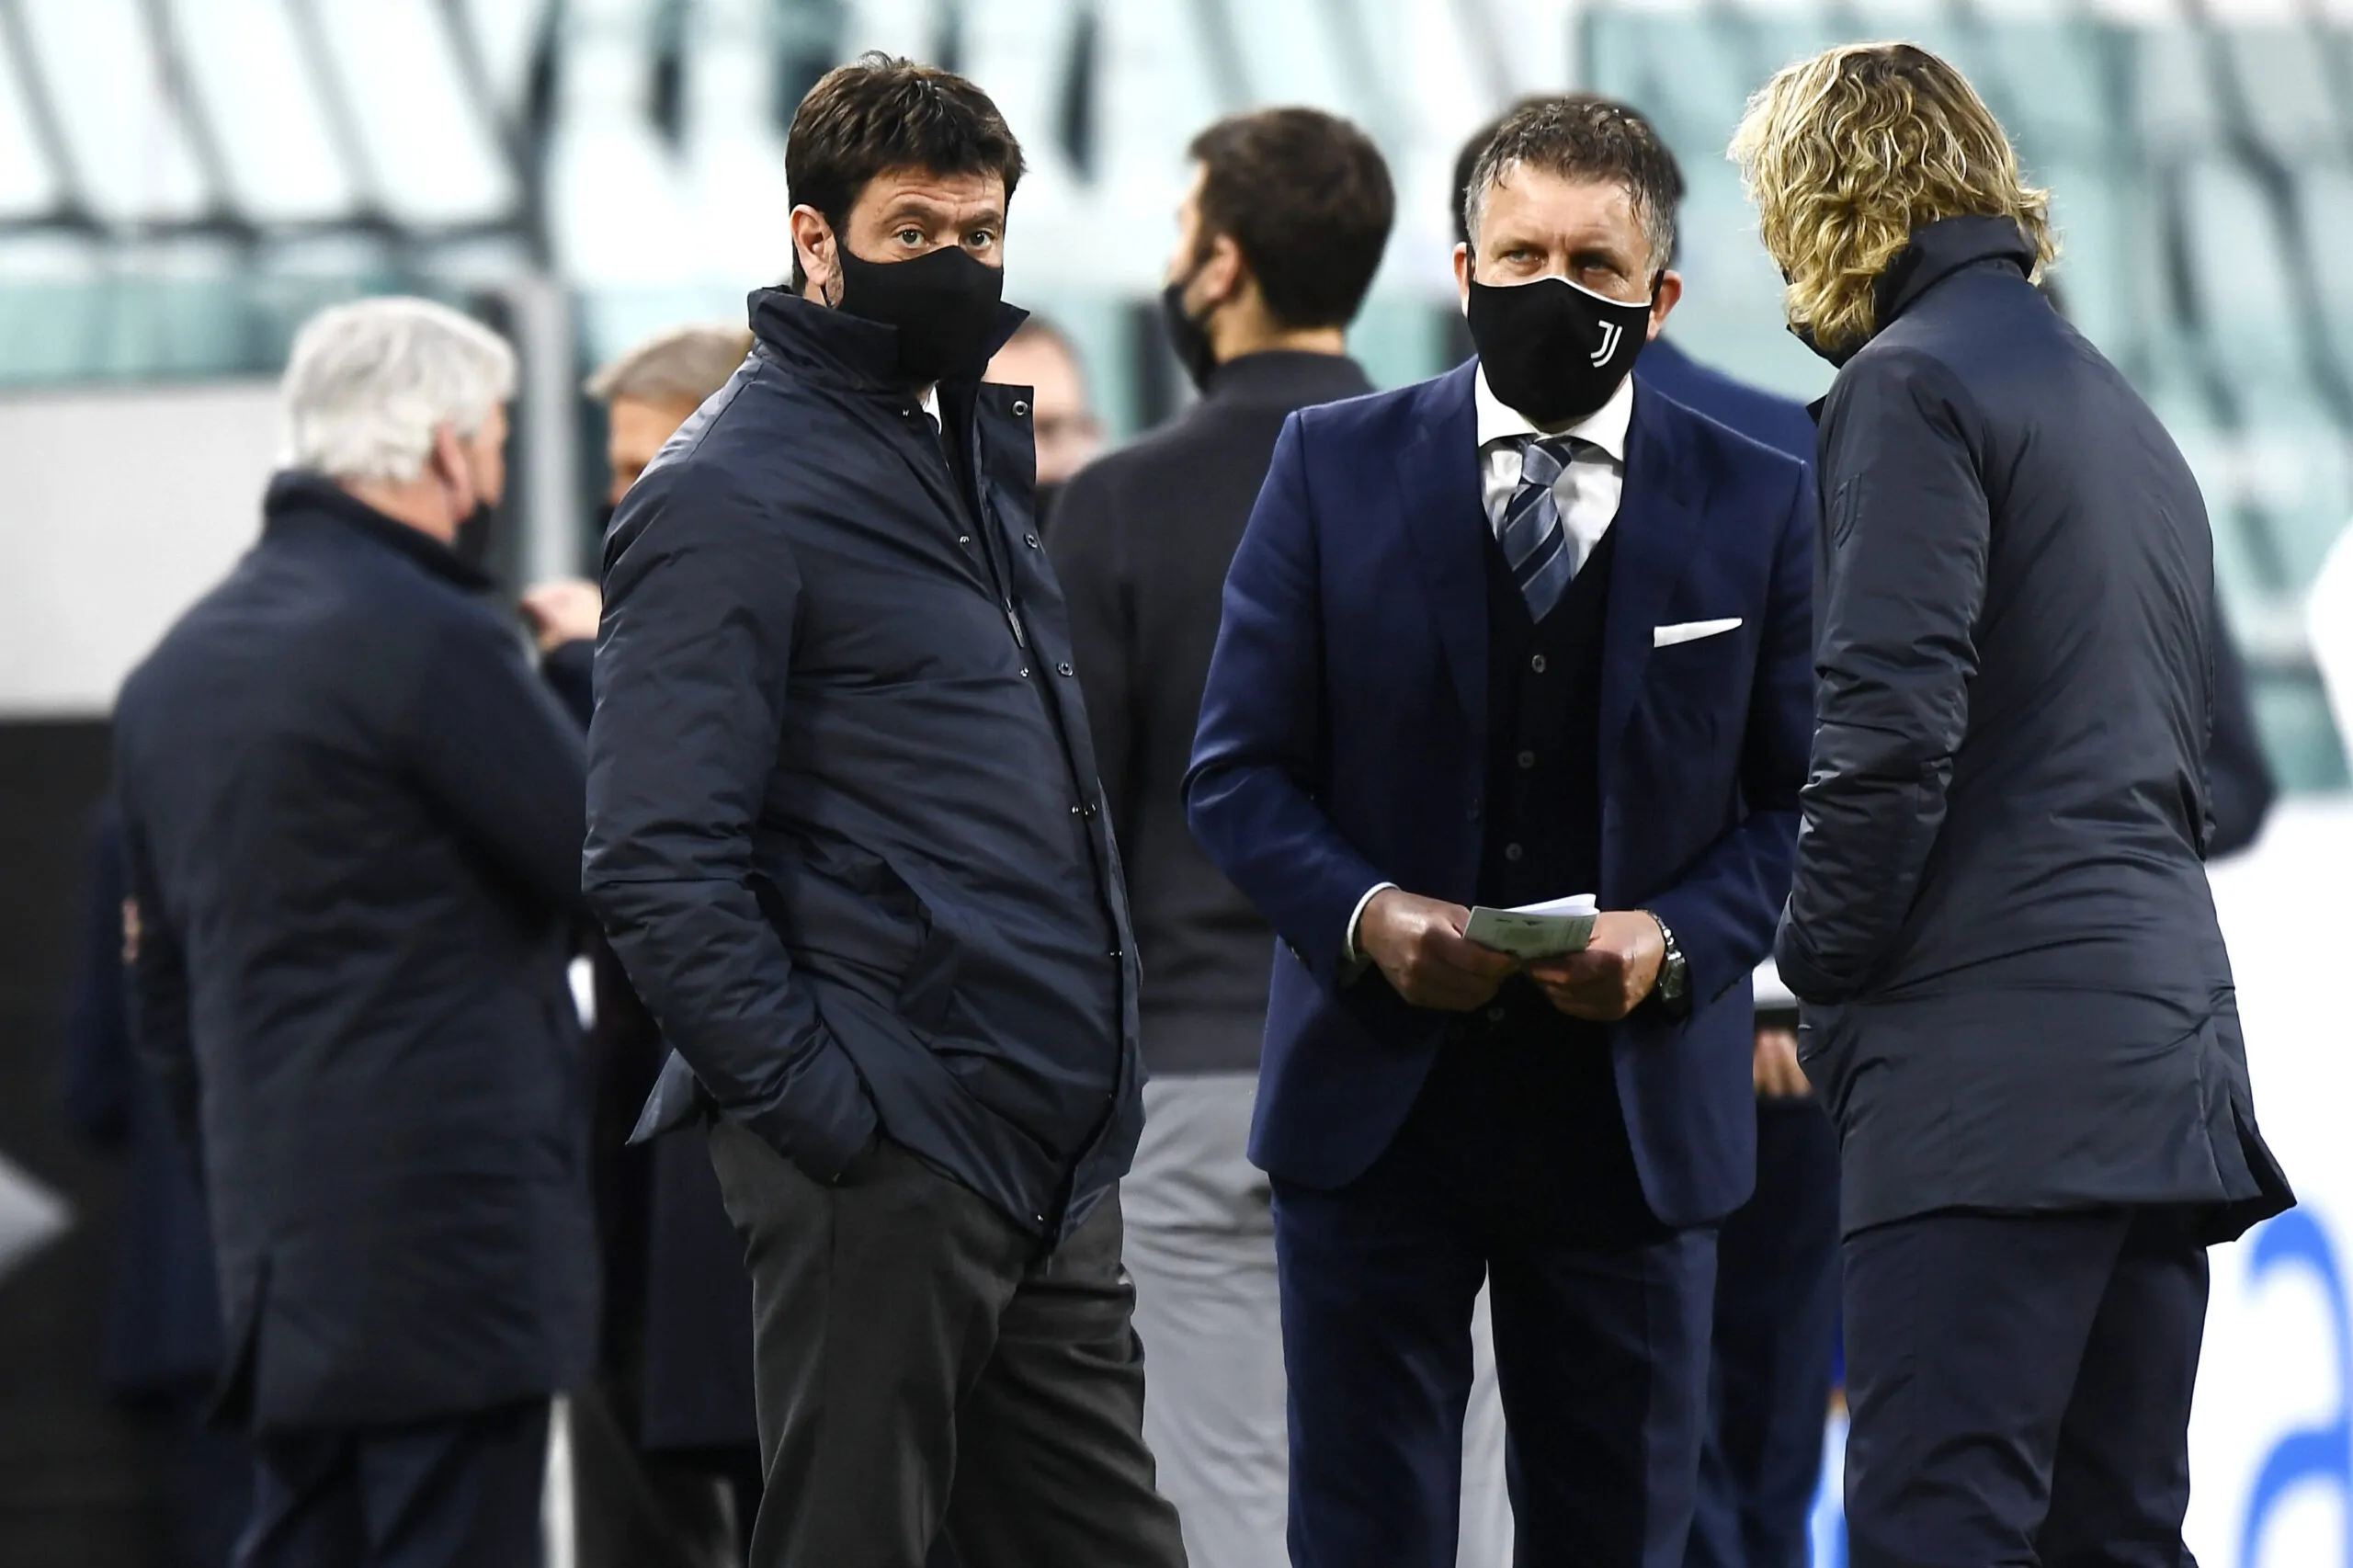 UFFICIALE – Fabio Paratici lascia la Juventus dopo undici anni insieme